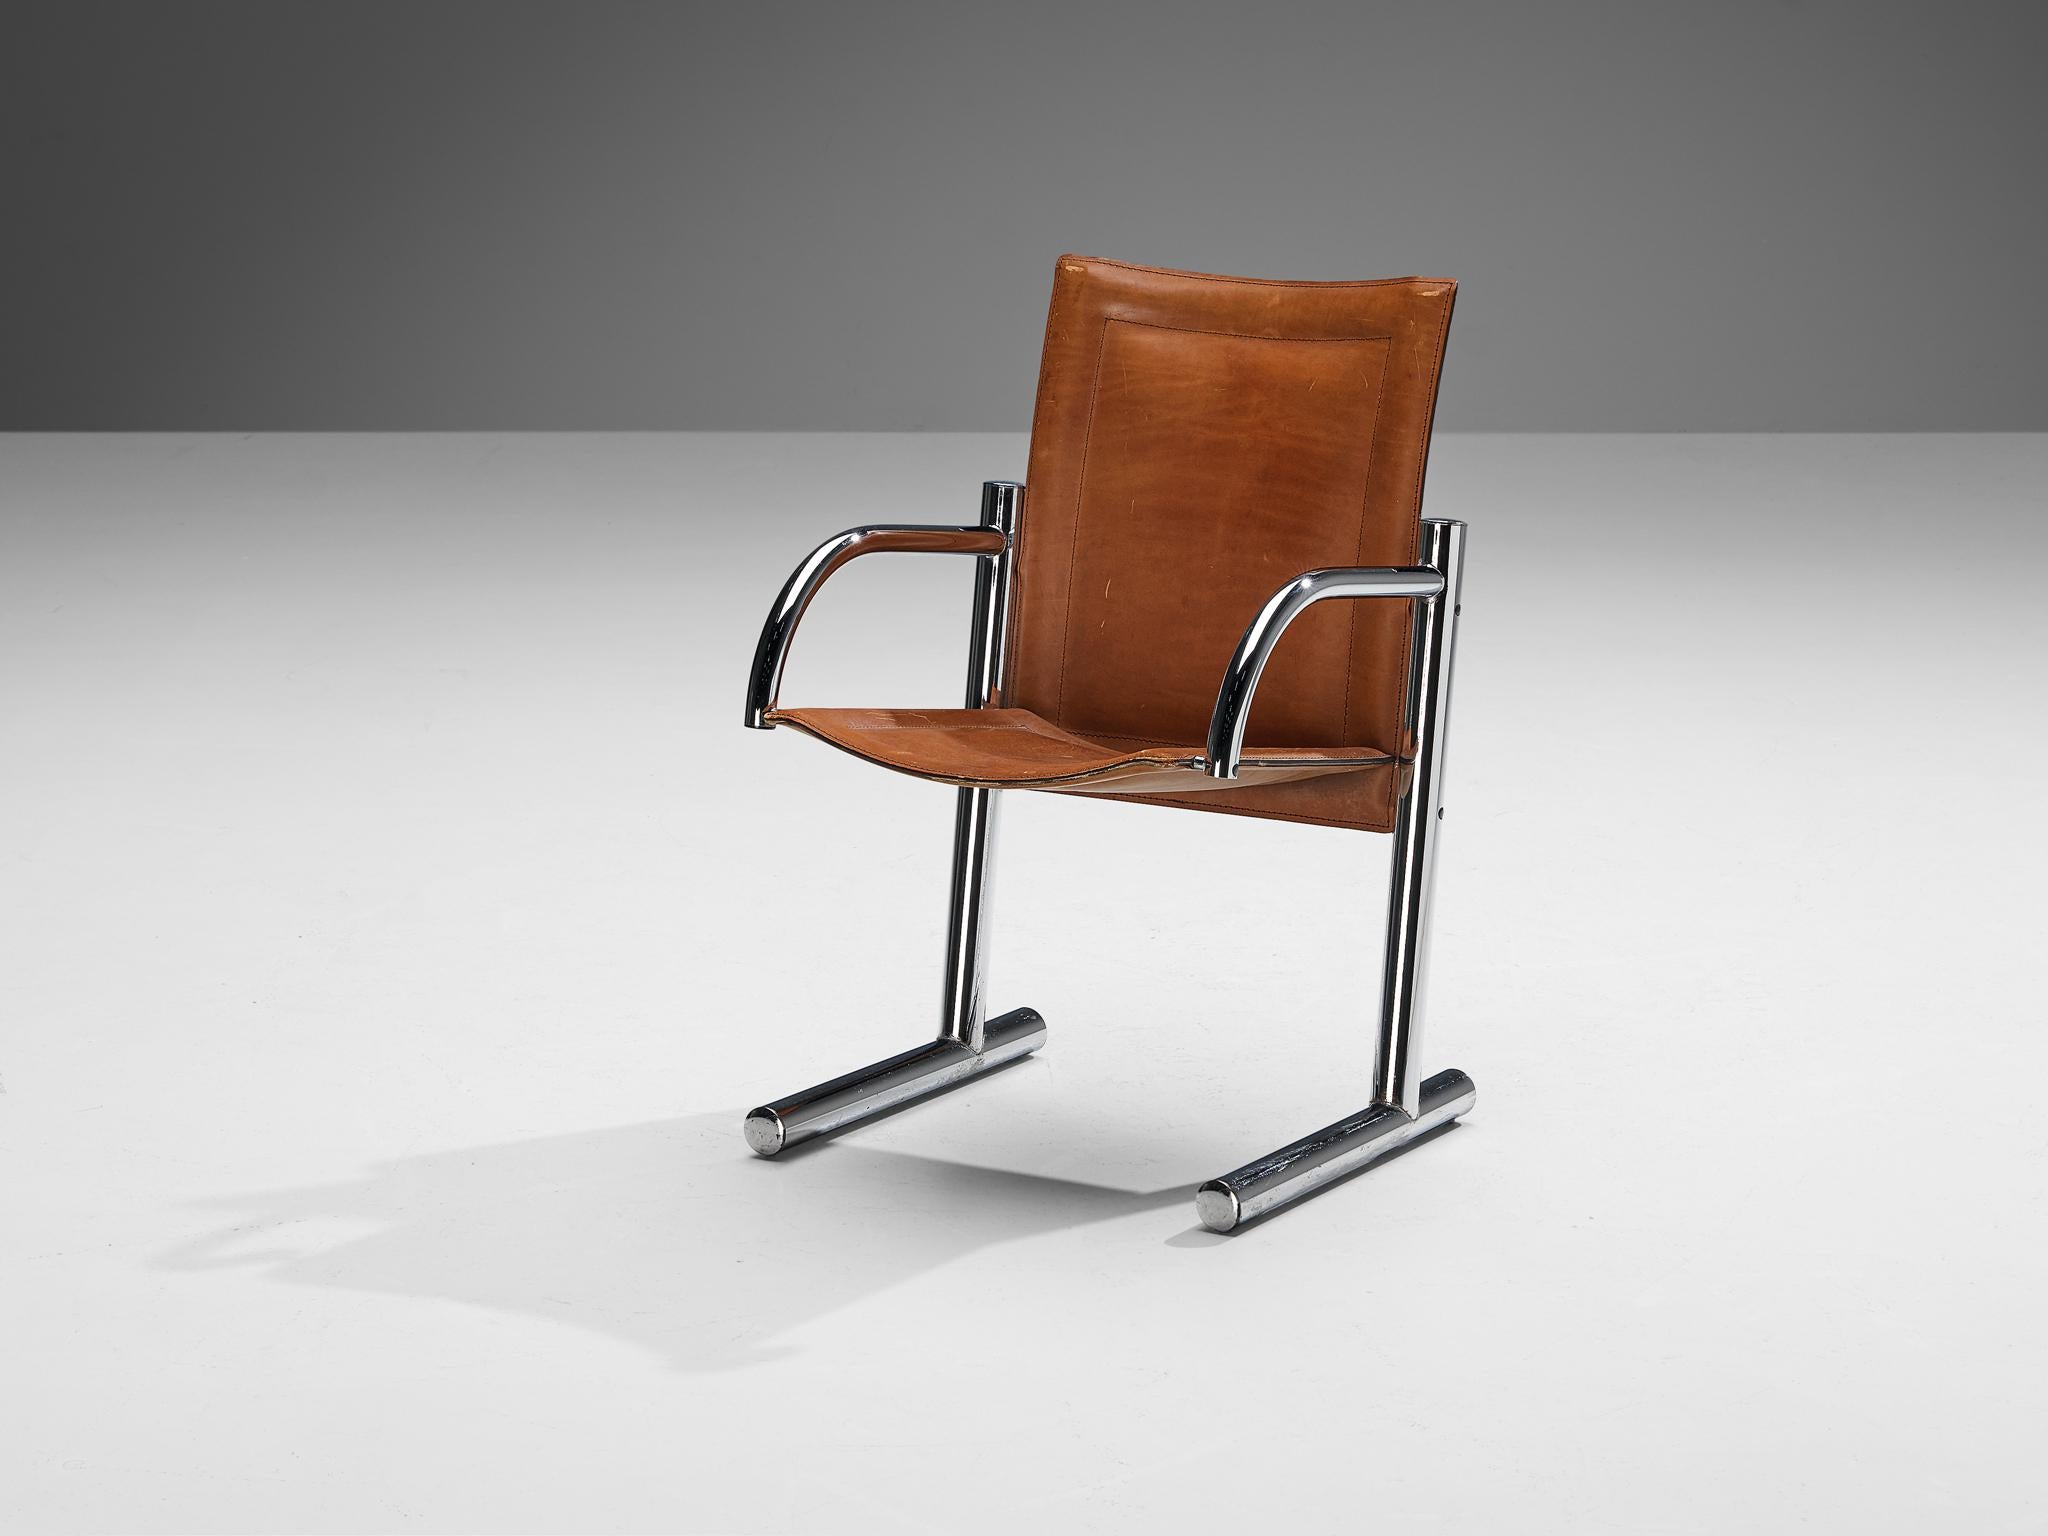 Chaise de salle à manger, cuir de selle, acier chromé, Italie, années 1970

Ce fauteuil robuste est pur et clair dans son exécution, ce qui lui confère une apparence à la fois simple et majestueuse. Le cadre tubulaire en acier chromé composé